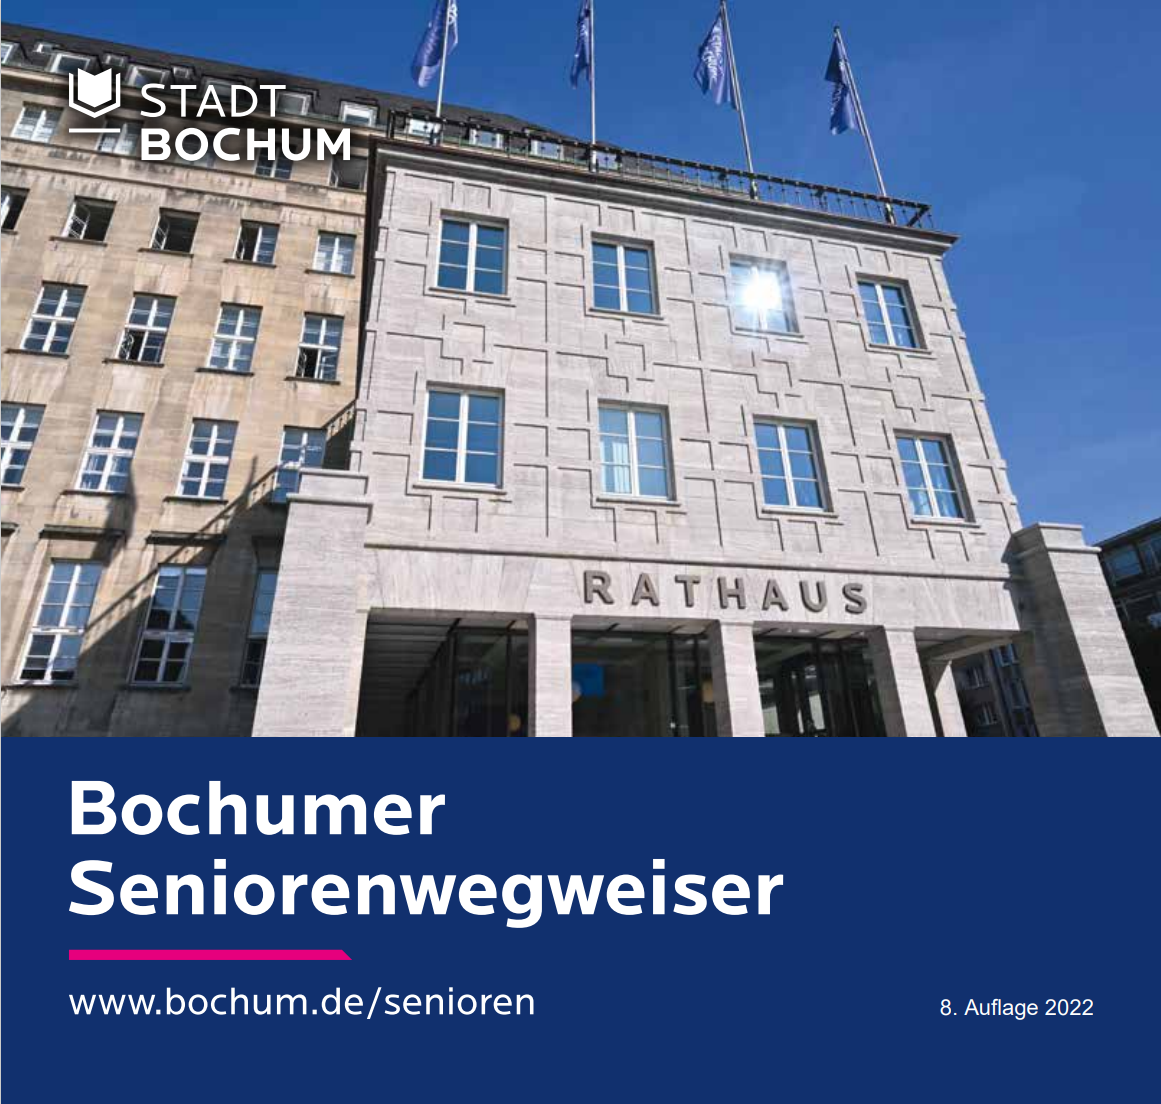 Bochum Seniorenwegweiser.png